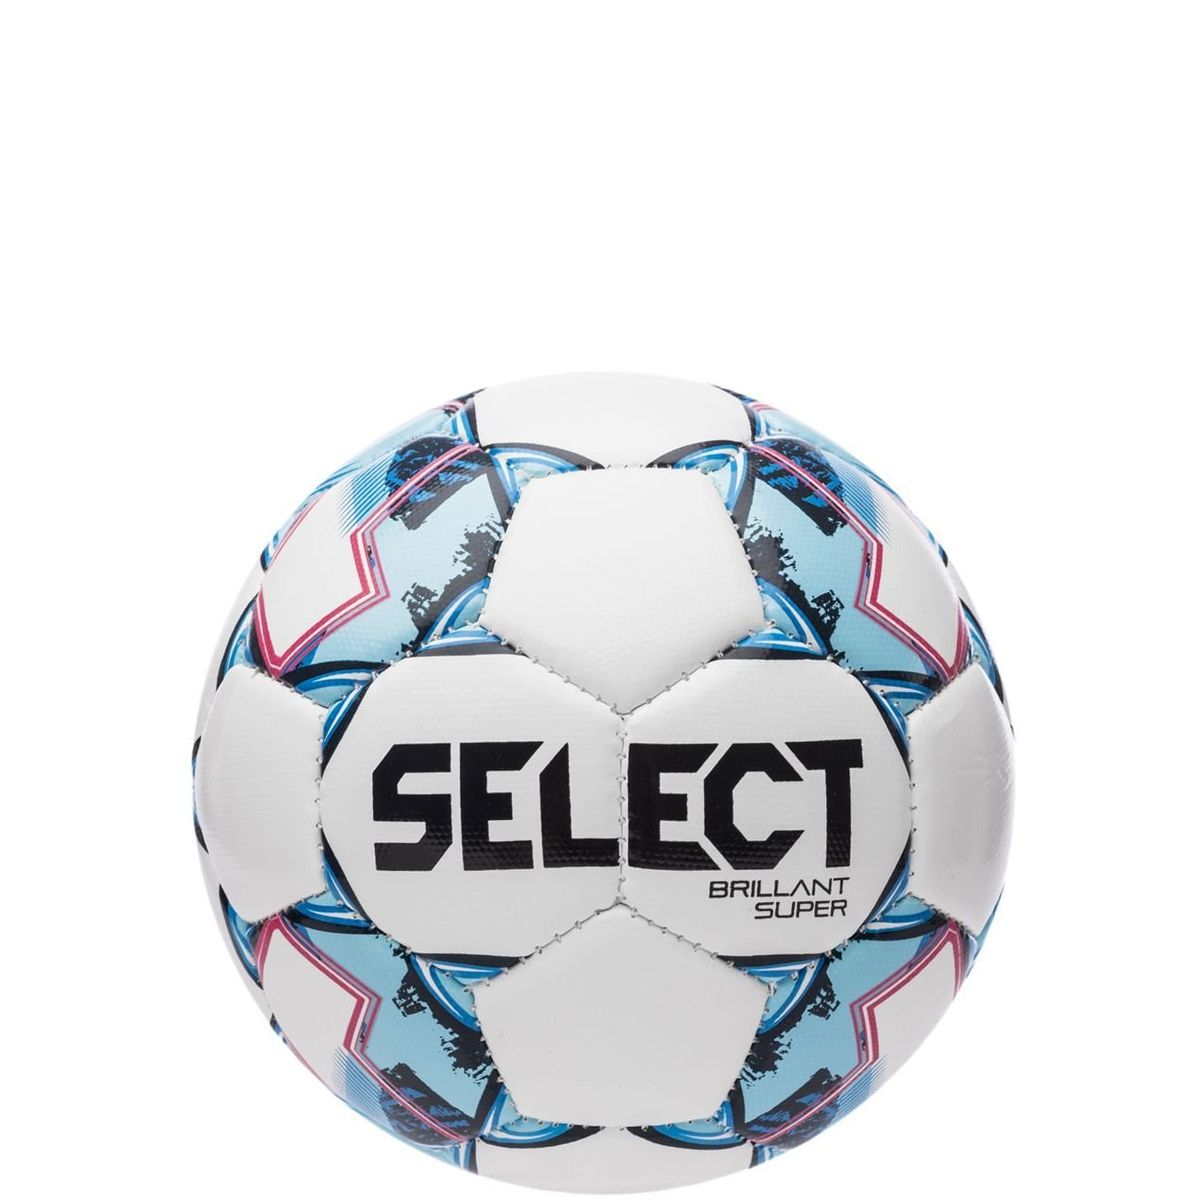 Мяч сувенирный SELECT Brillant Super Размер 1 Б...